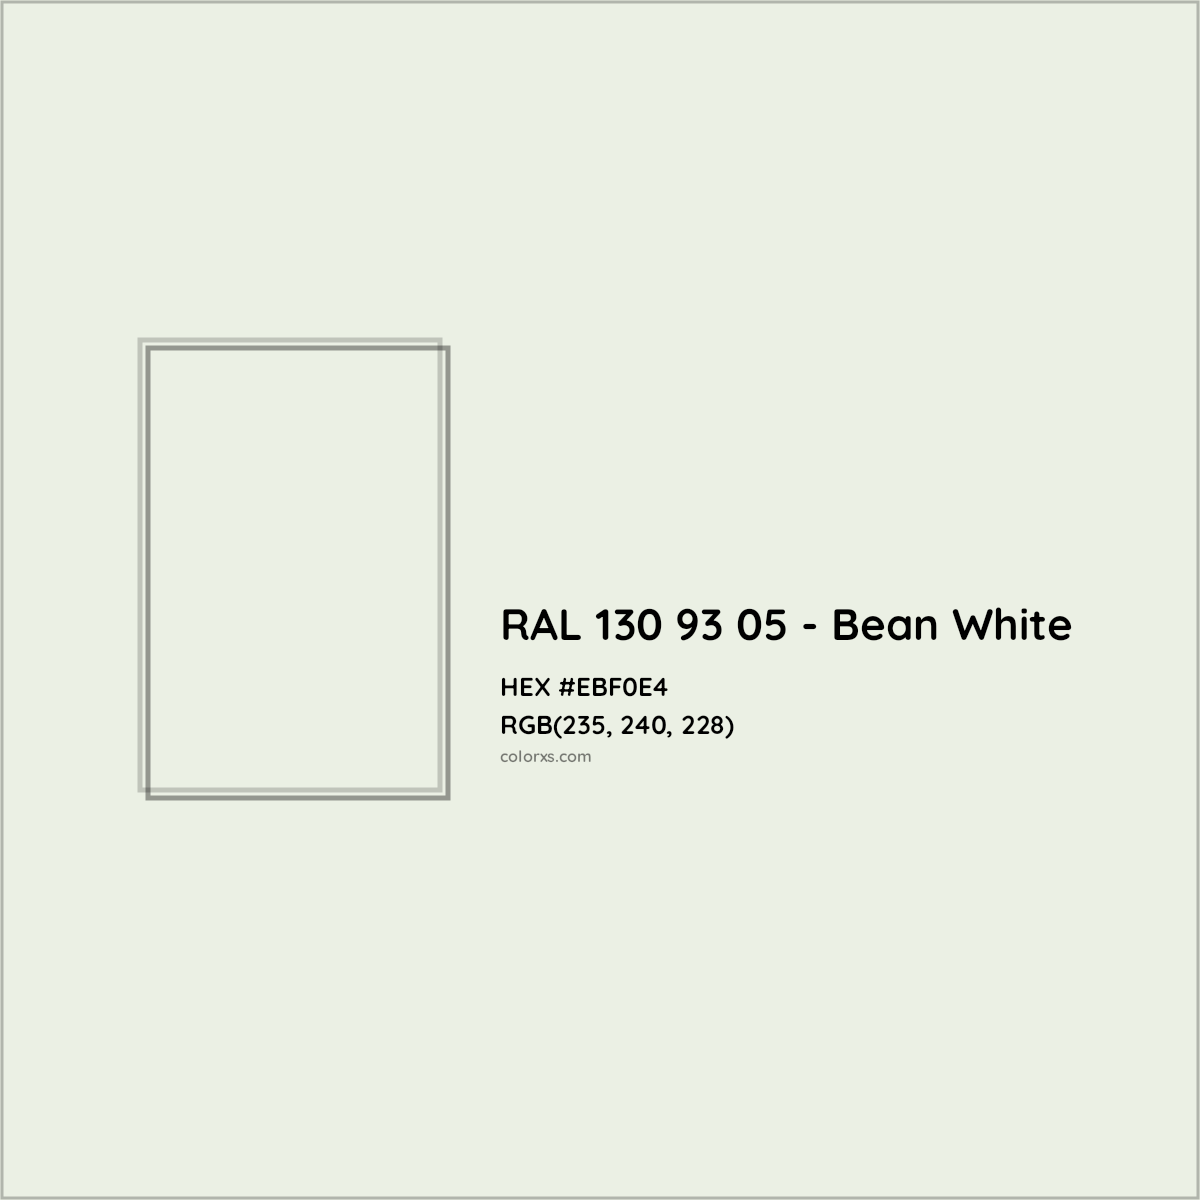 HEX #EBF0E4 RAL 130 93 05 - Bean White CMS RAL Design - Color Code